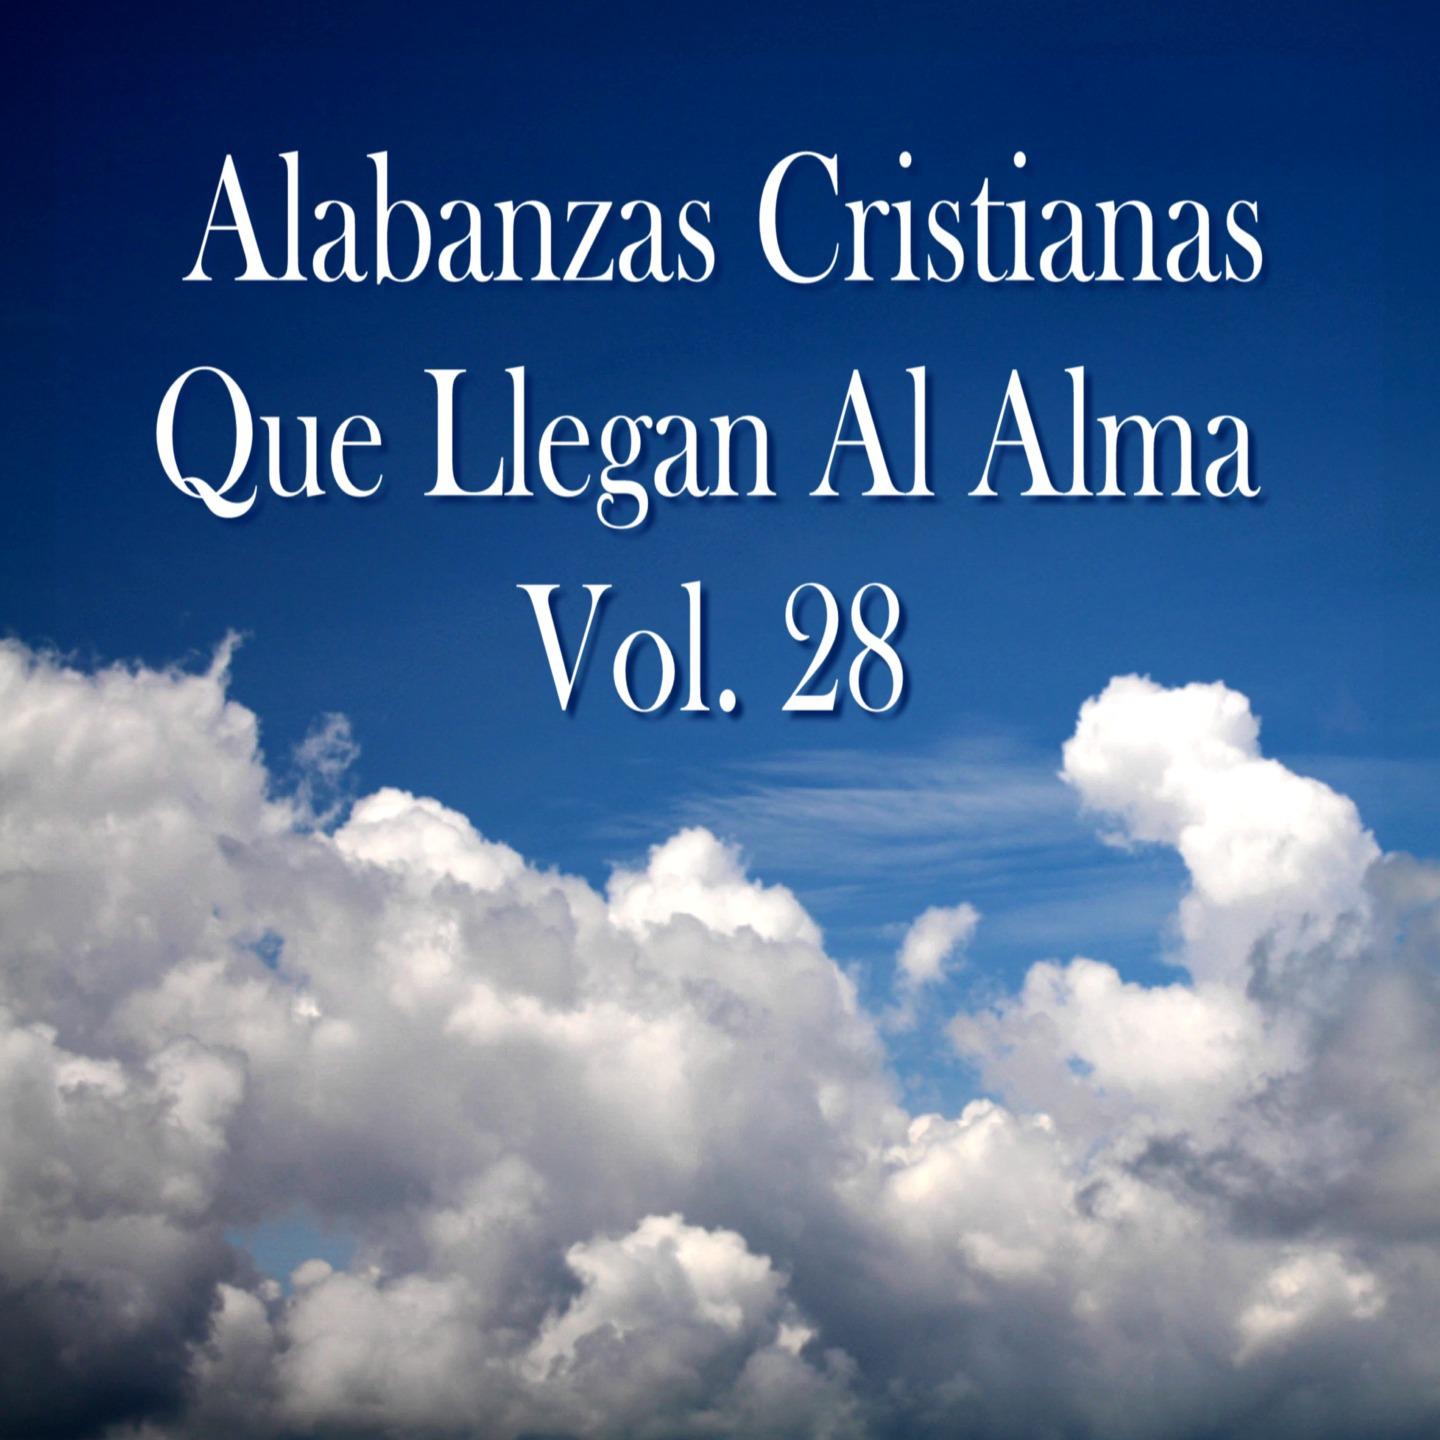 Alabanzas Cristianas Que Llegan al Alma, Vol. 28